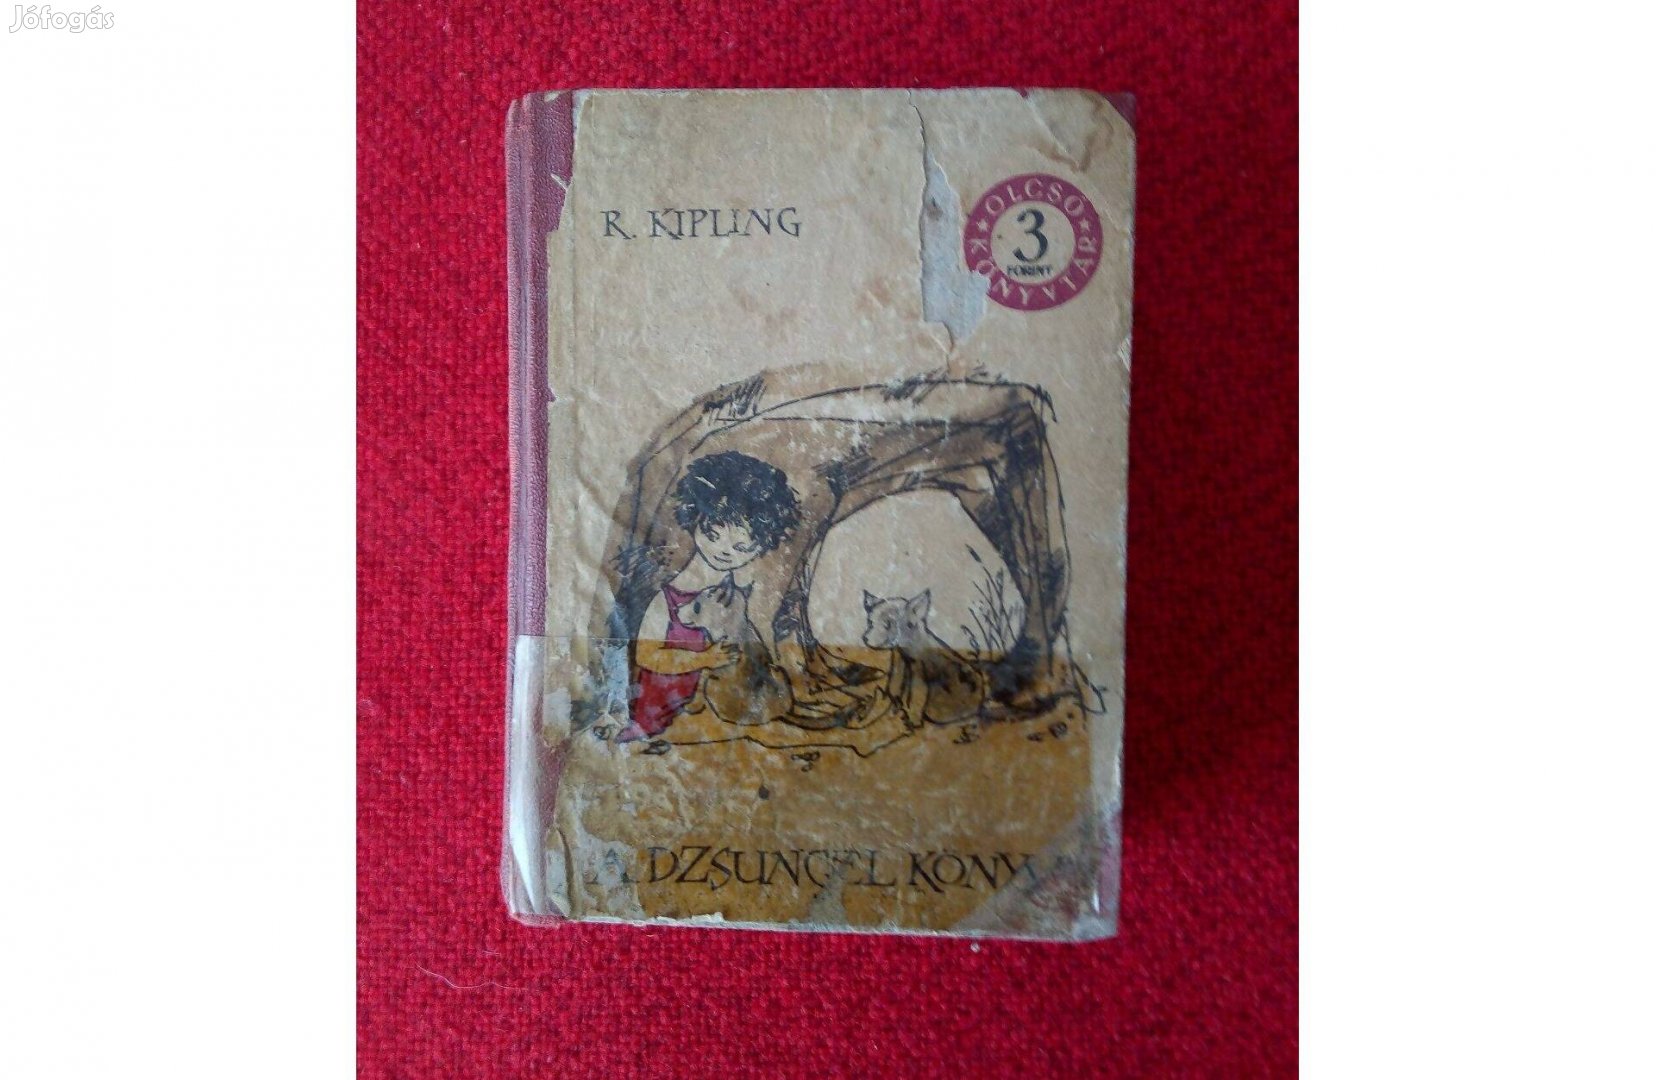 R. Kipling. A dzsungel könyve. I-II. kötet Olcsó Könyvtár. 1961